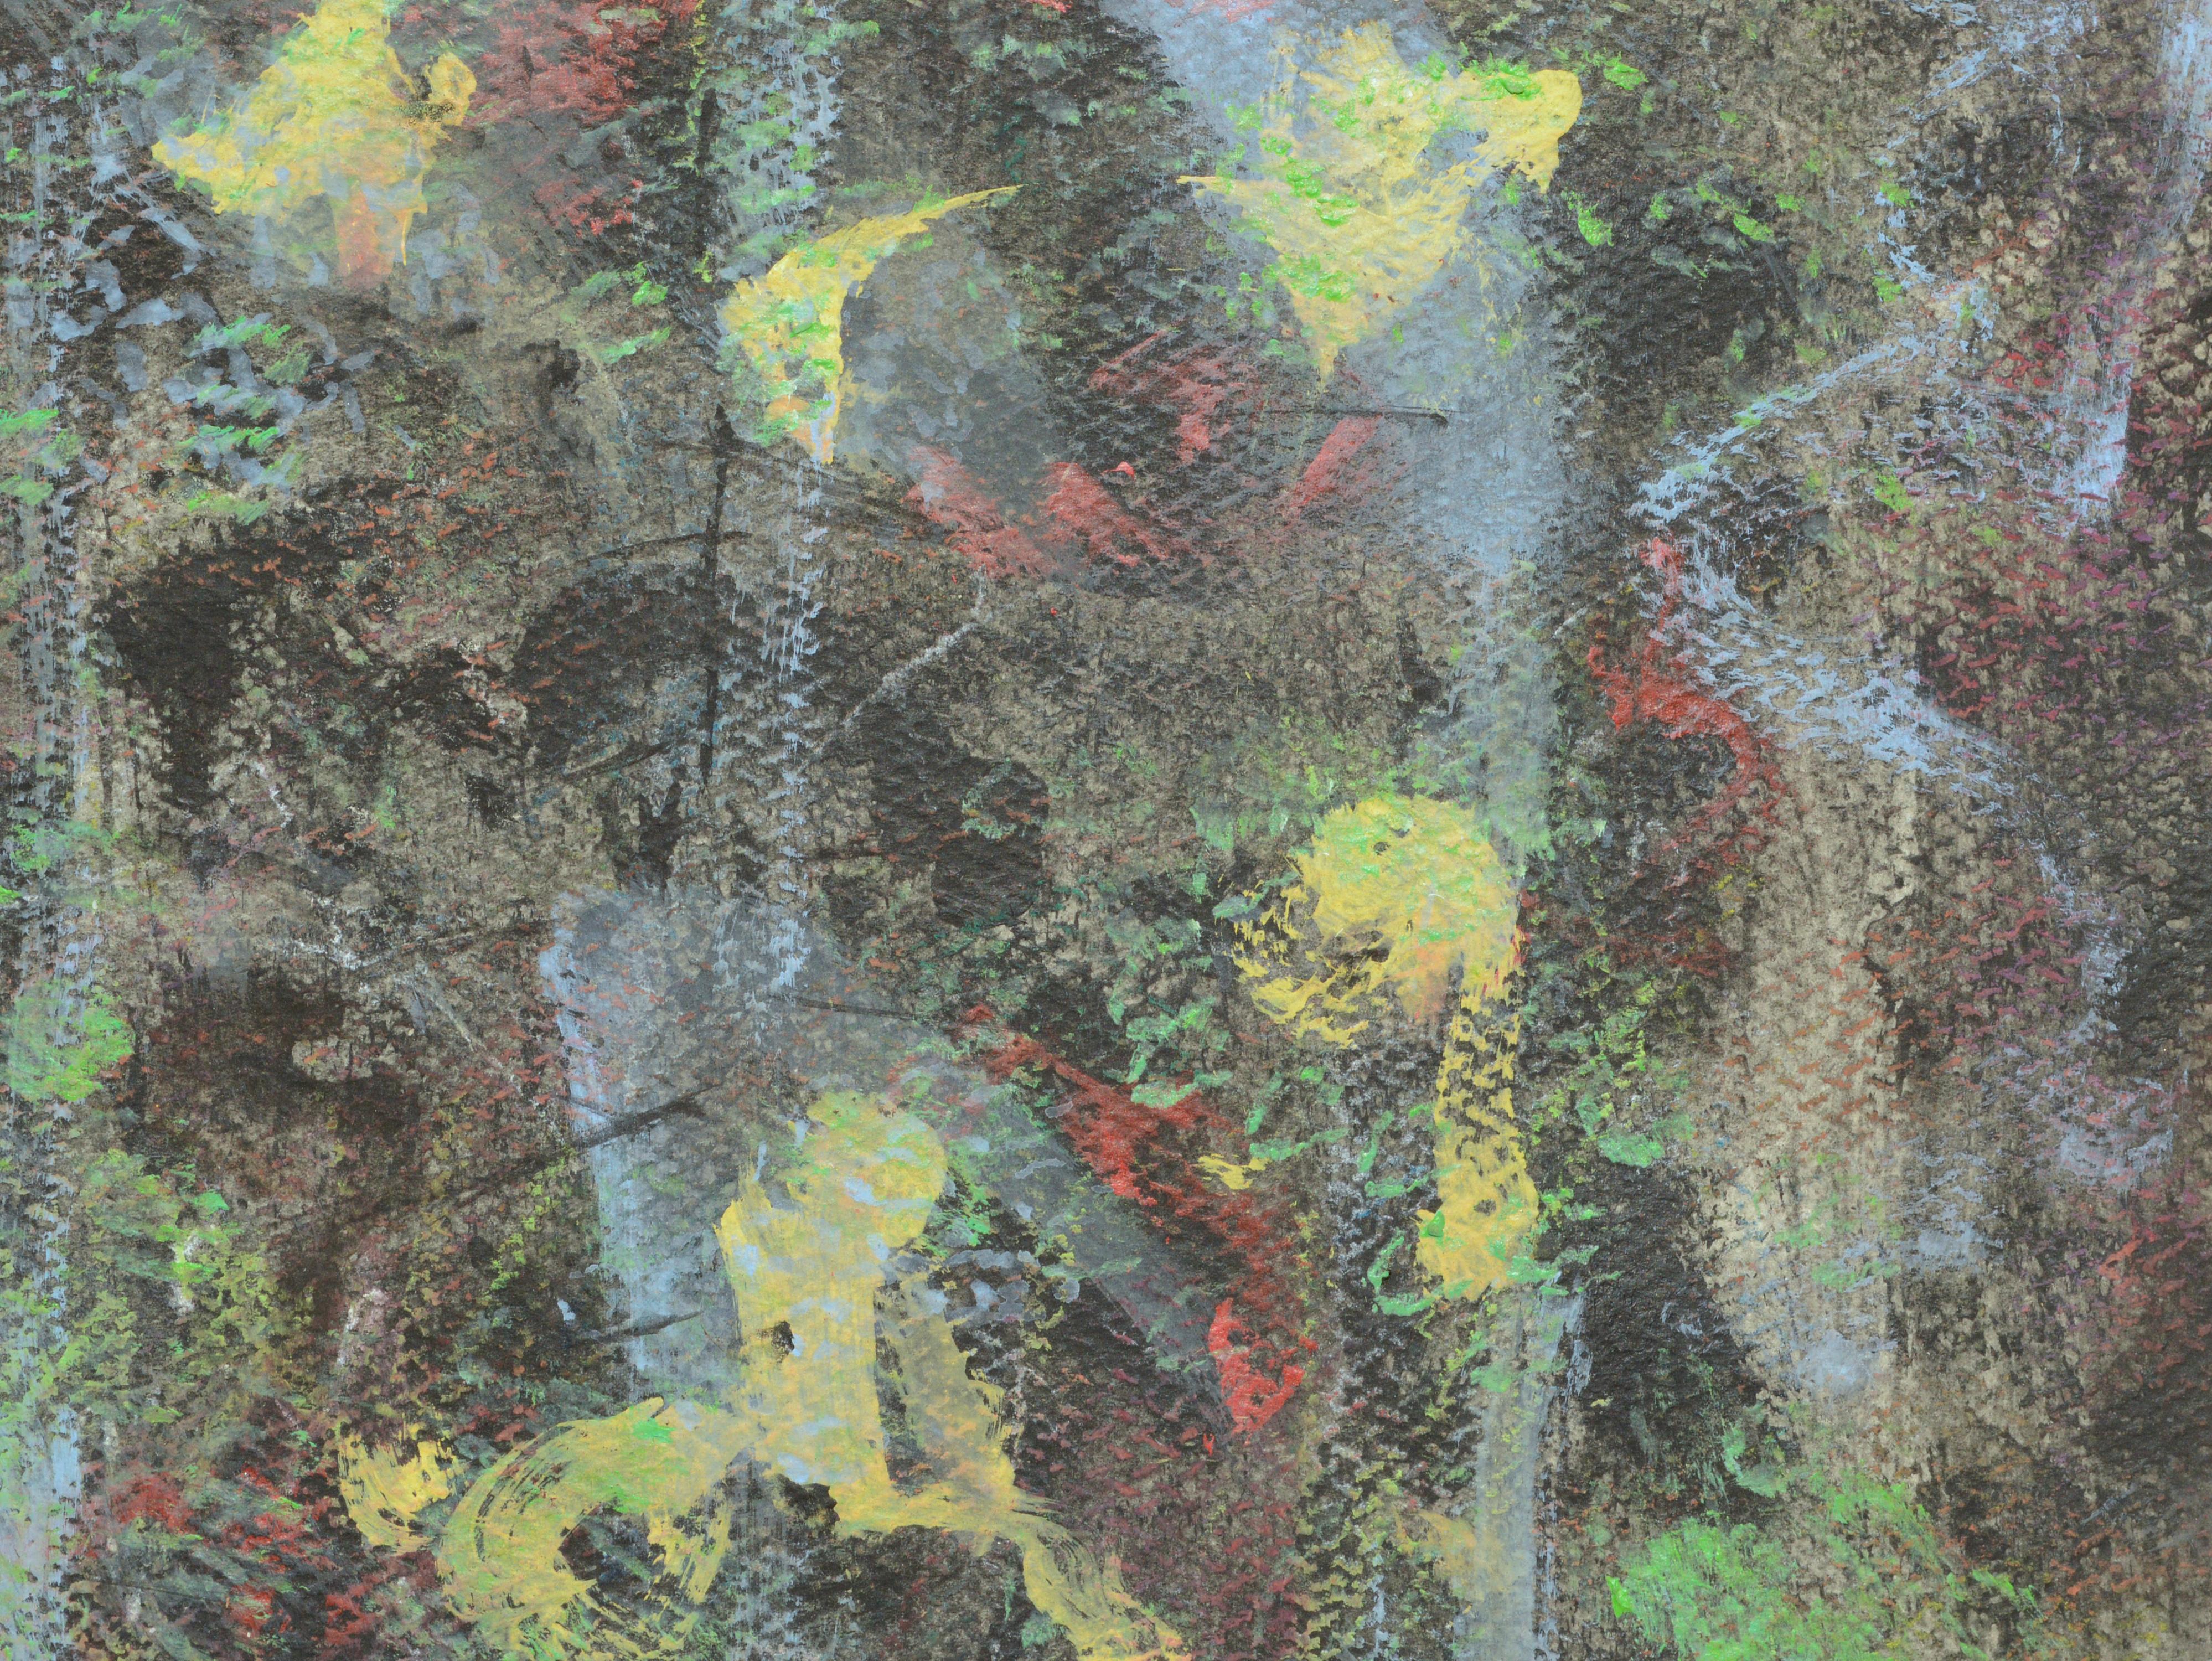 Abstrakte expressionistische Komposition mit Primärfarben, Berkeley, Kalifornien, 1970er Jahre (Grau), Landscape Painting, von Louis Earnest Nadalini